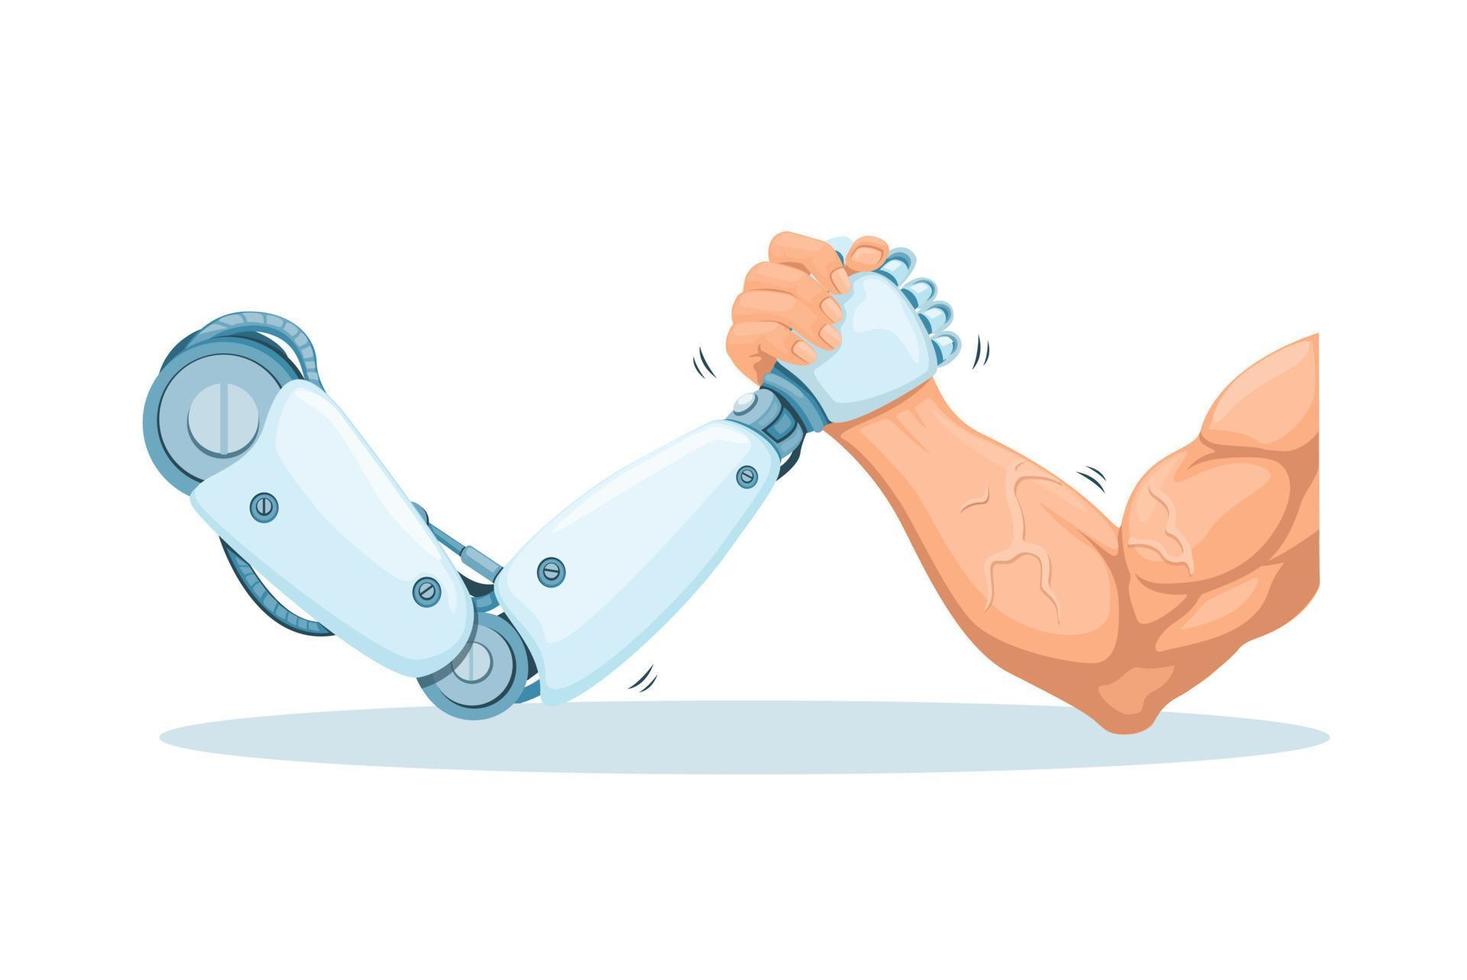 Roboter vs. Mensch Arm Ringen Spiel Herausforderung Symbol Karikatur Illustration Vektor